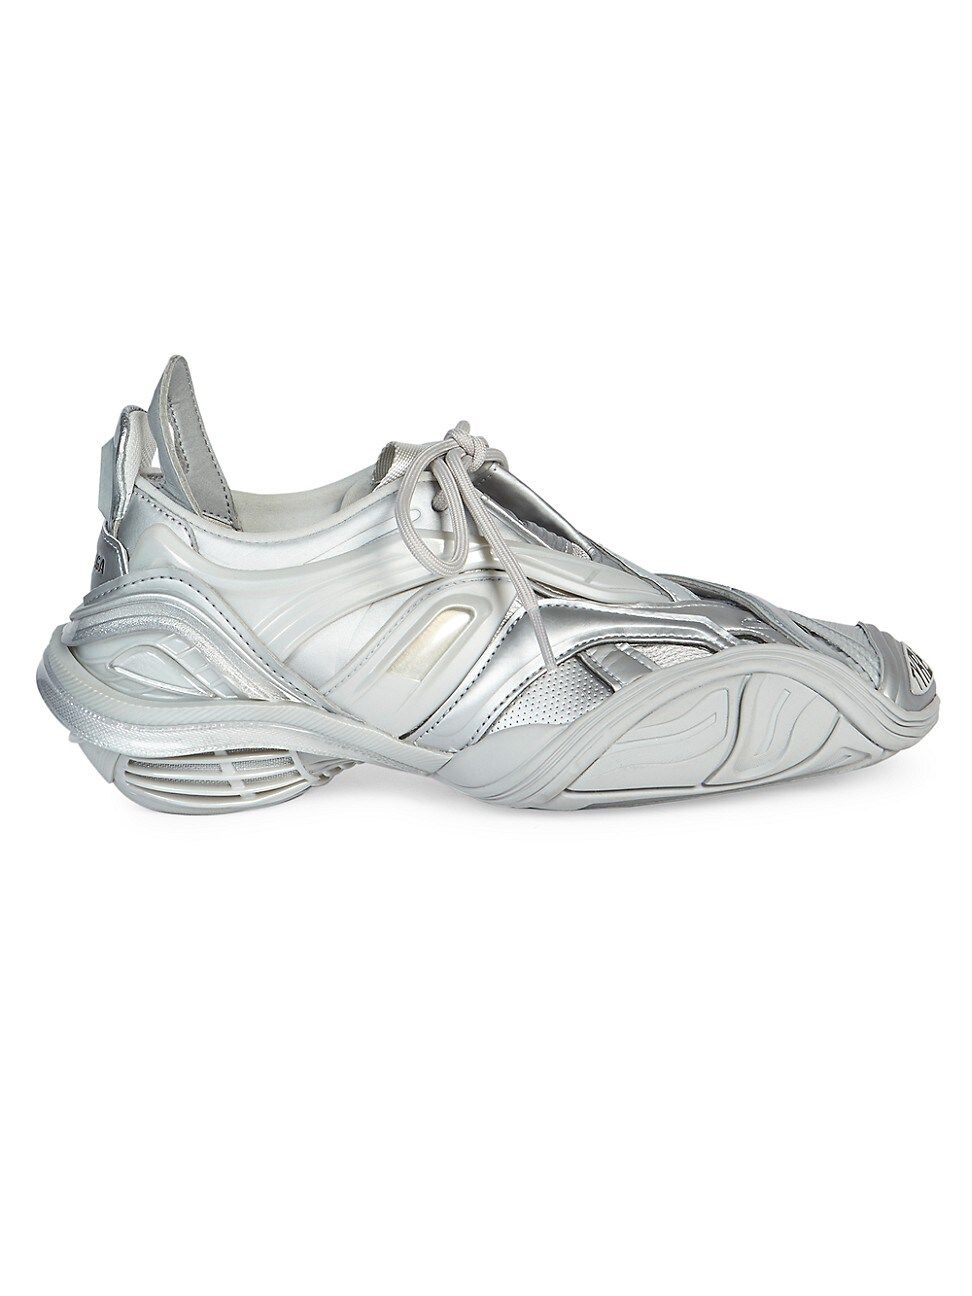 Balenciaga Women's Tyrex Sneakers - Silver - Size 38 (8) | Saks Fifth Avenue